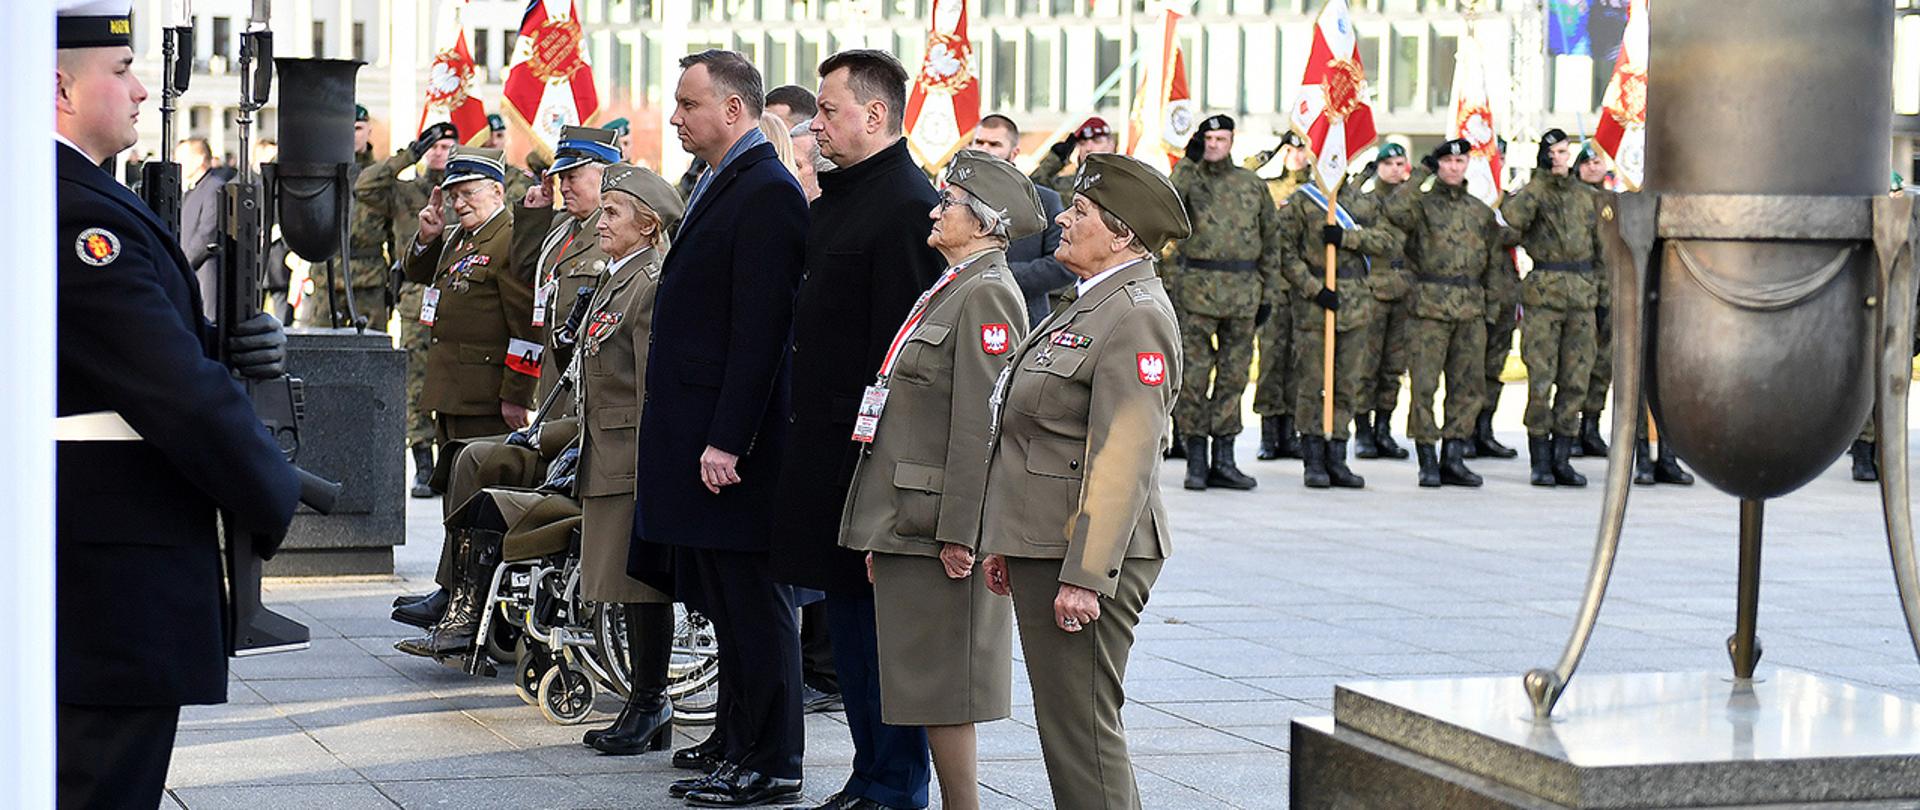 Prezydent RP, szef MON i kombatanci stoją przed Grobem Nieznanego Żołnierza podczas ceremonii złożenia wieńców. W tle żołnierze Wojska Polskiego z pocztami sztandarowymi.